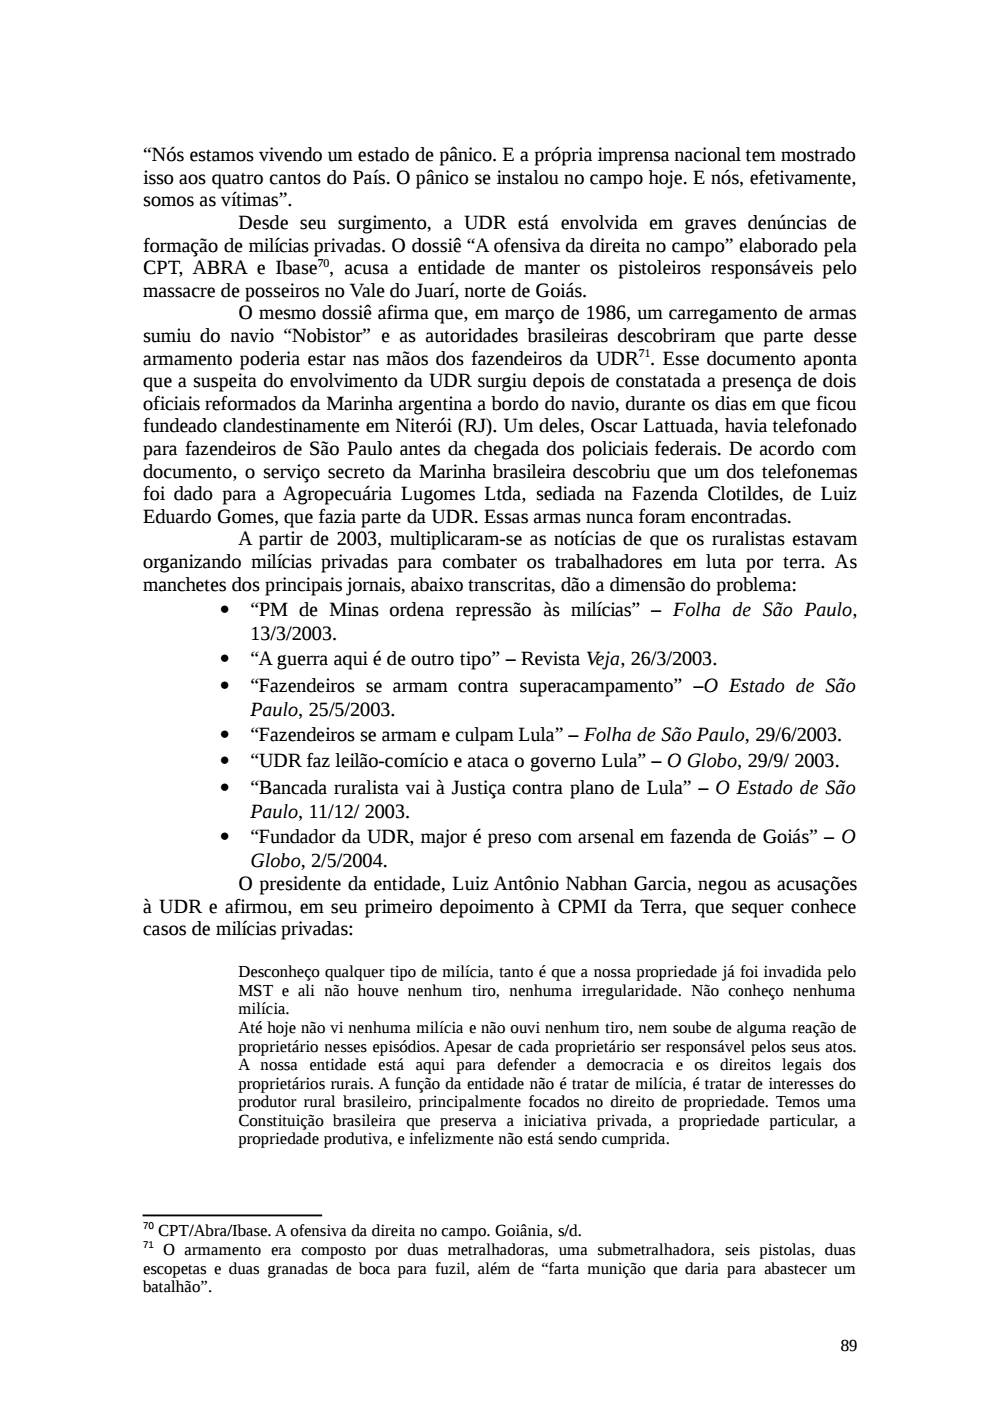 Page 89 from Relatório final da comissão